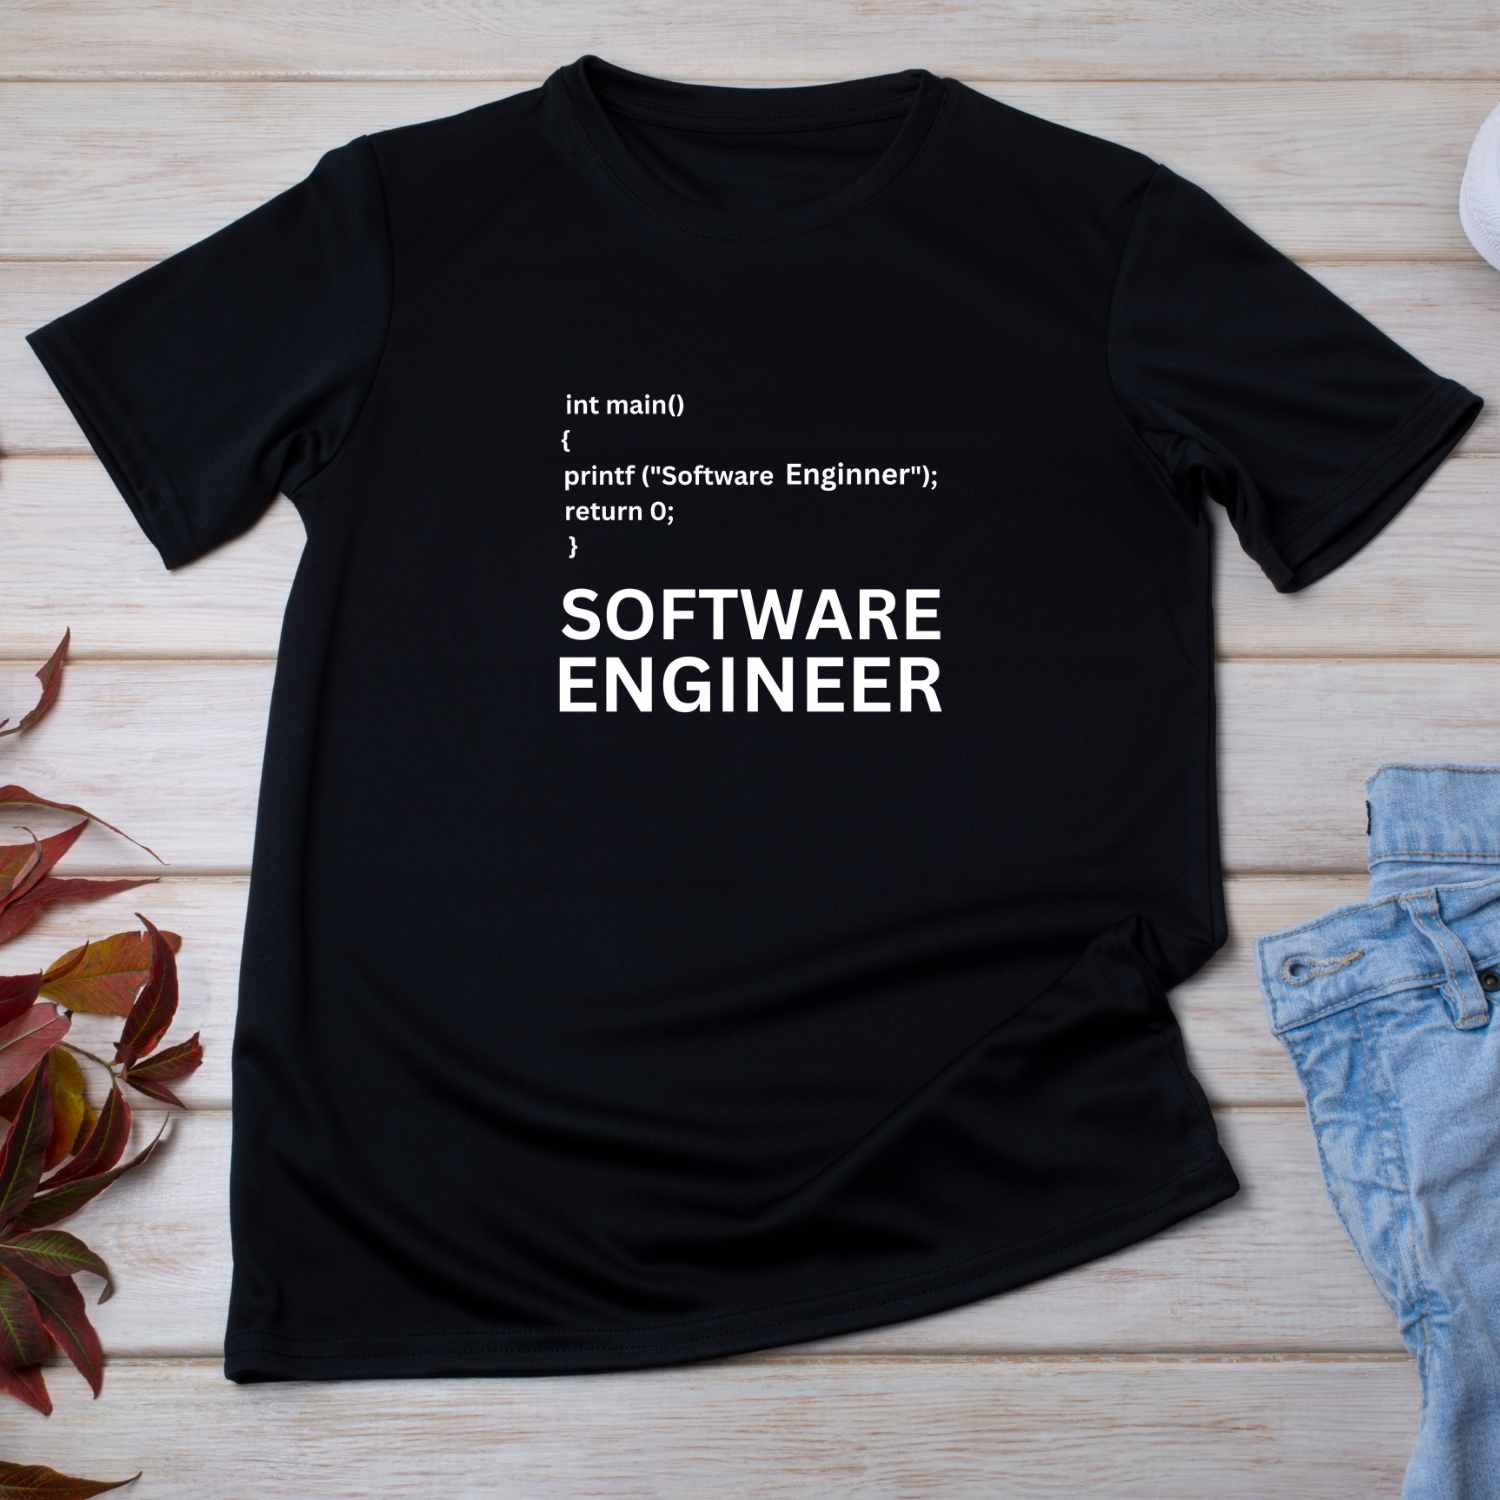 Software Engineer T-shirt Design